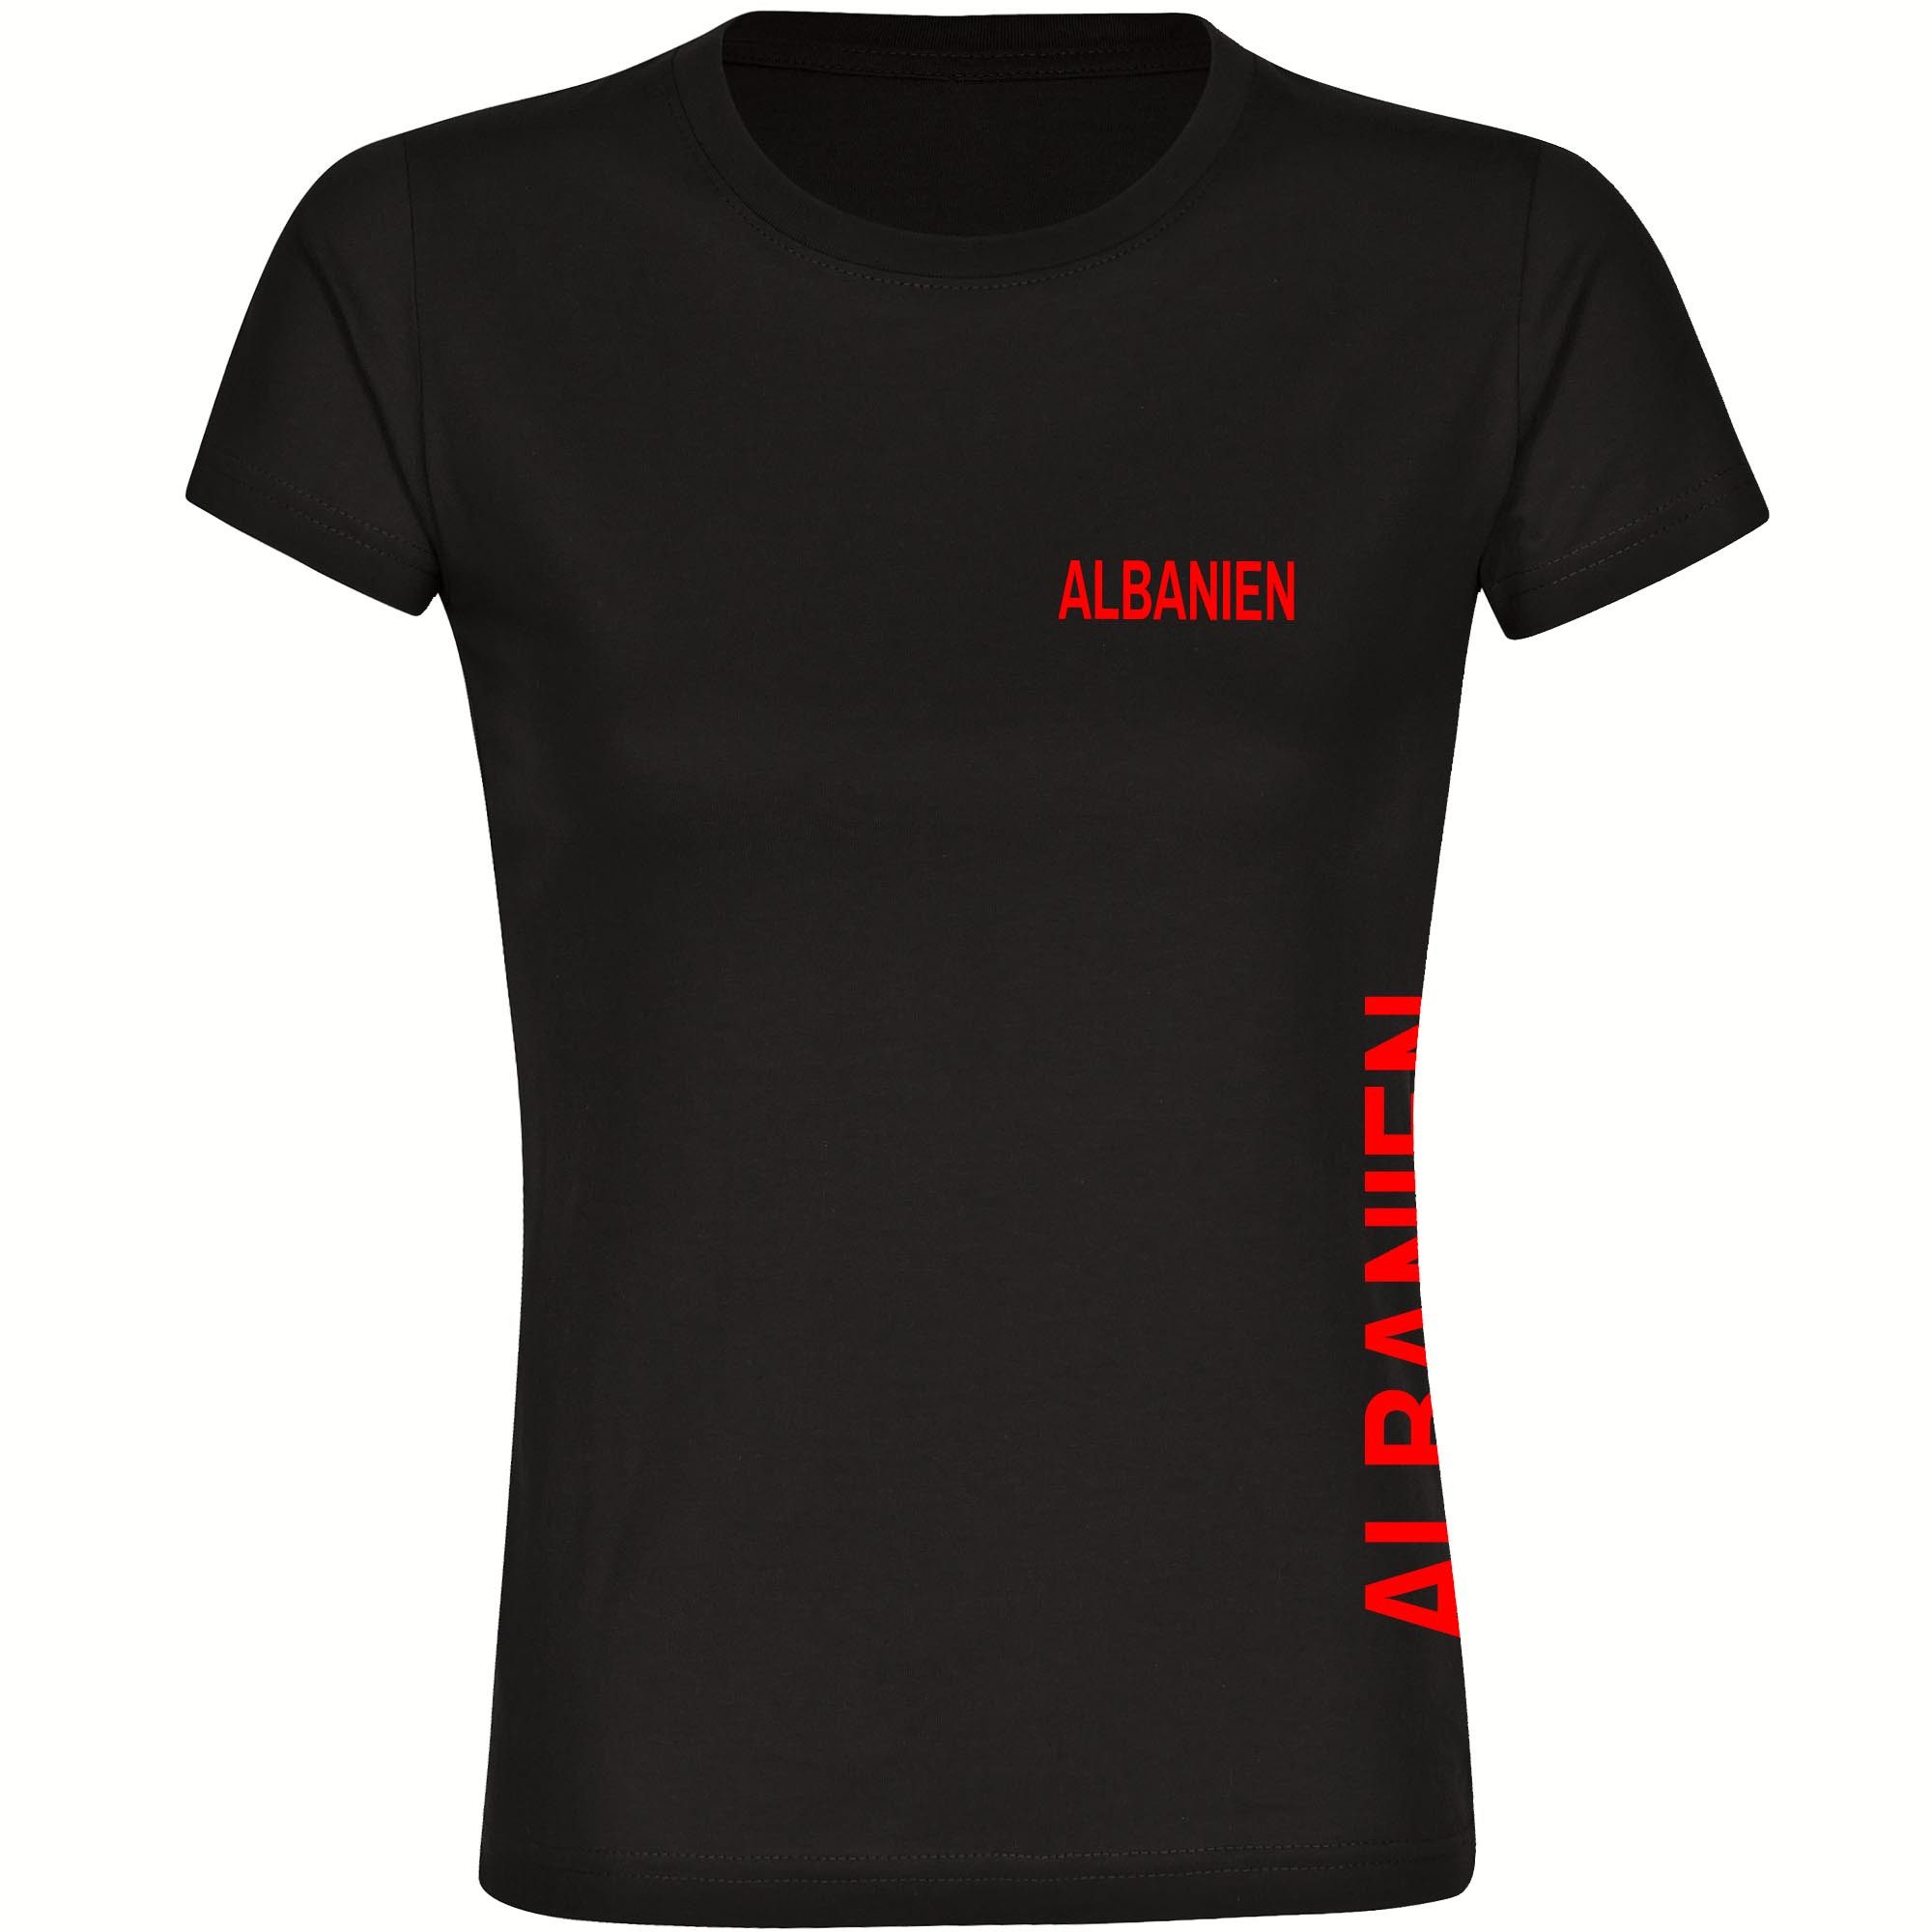 multifanshop T-Shirt Damen Albanien - Brust & Seite - Frauen